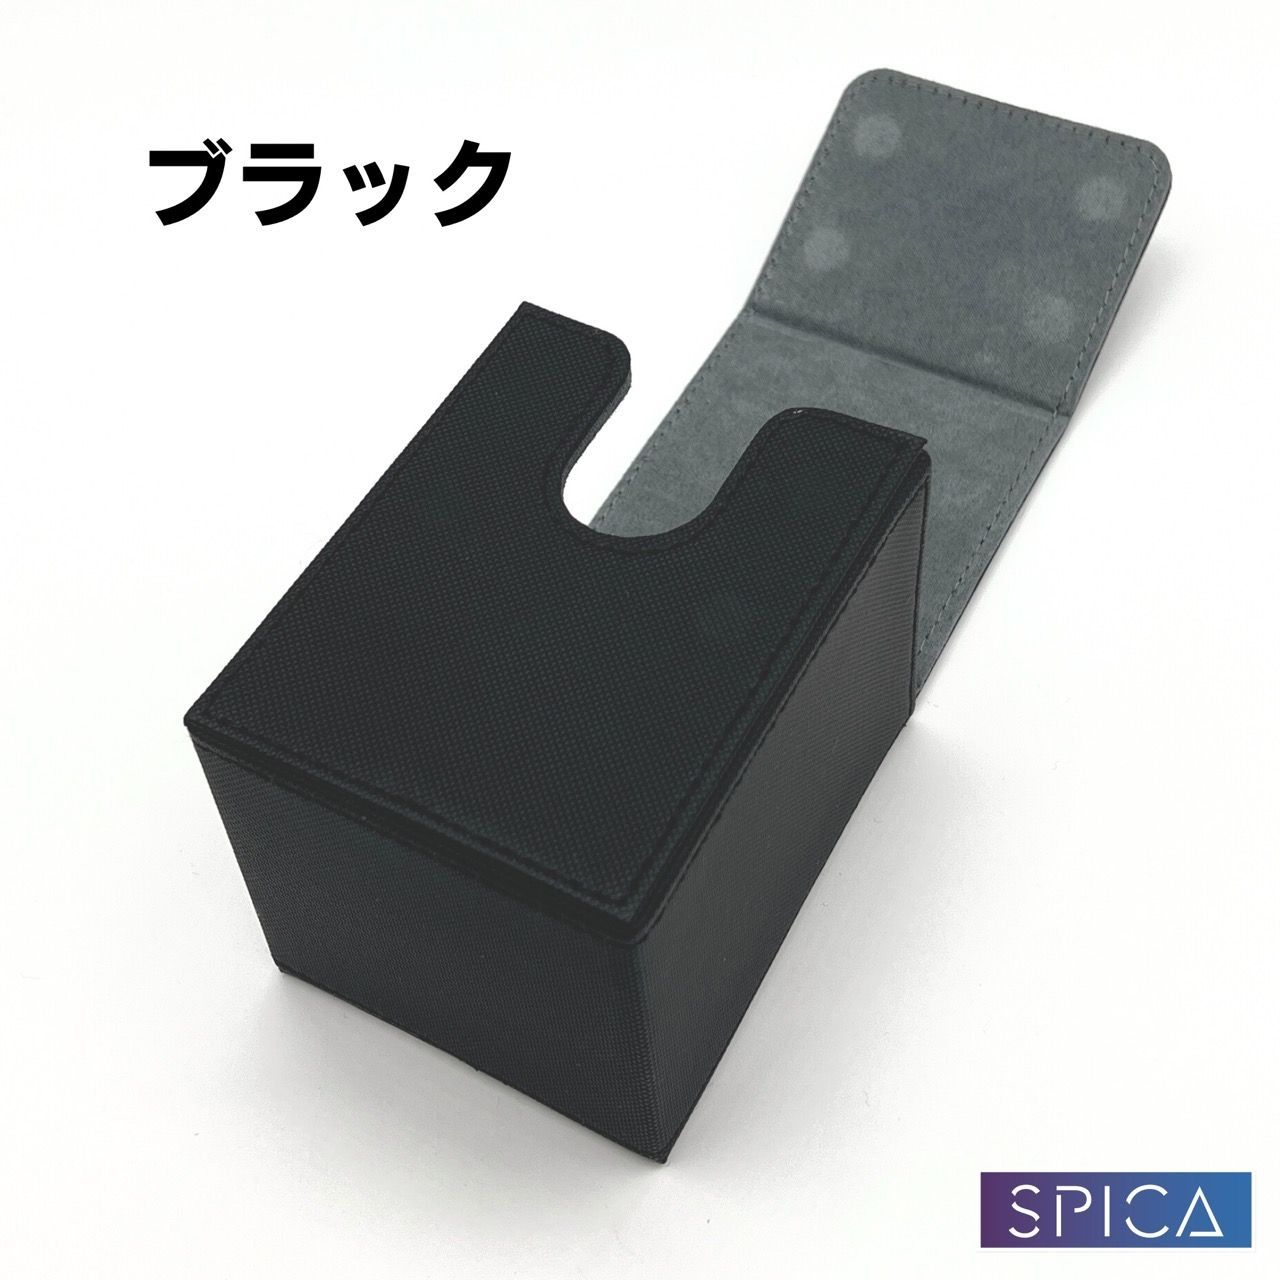 SPICA 4色から選べる デッキケース 2個セット トレカ 220枚収納 レザー